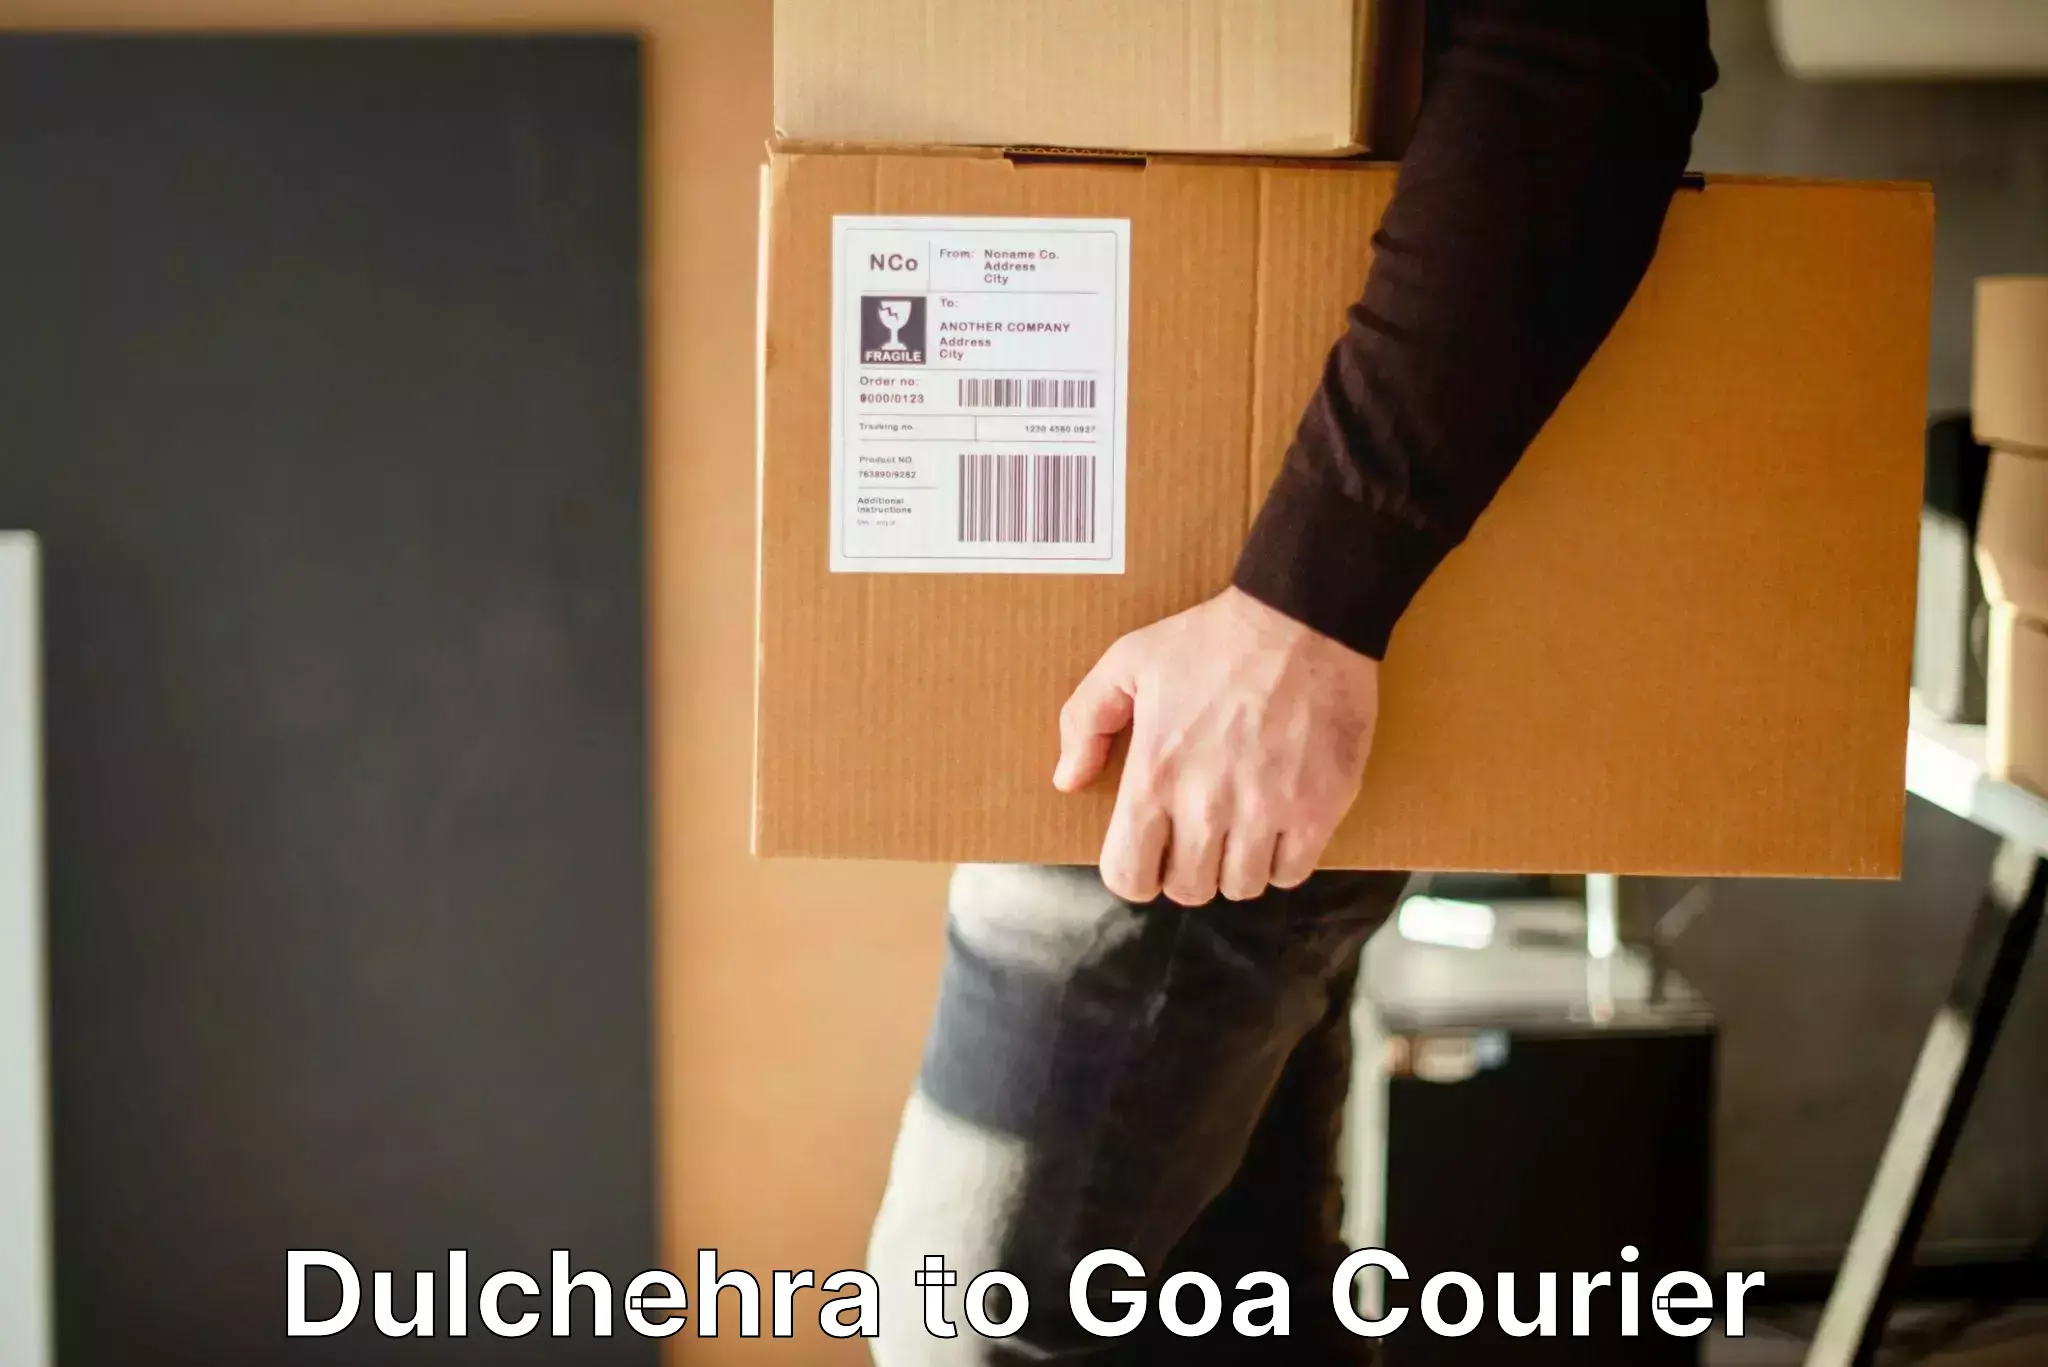 Baggage relocation service Dulchehra to Goa